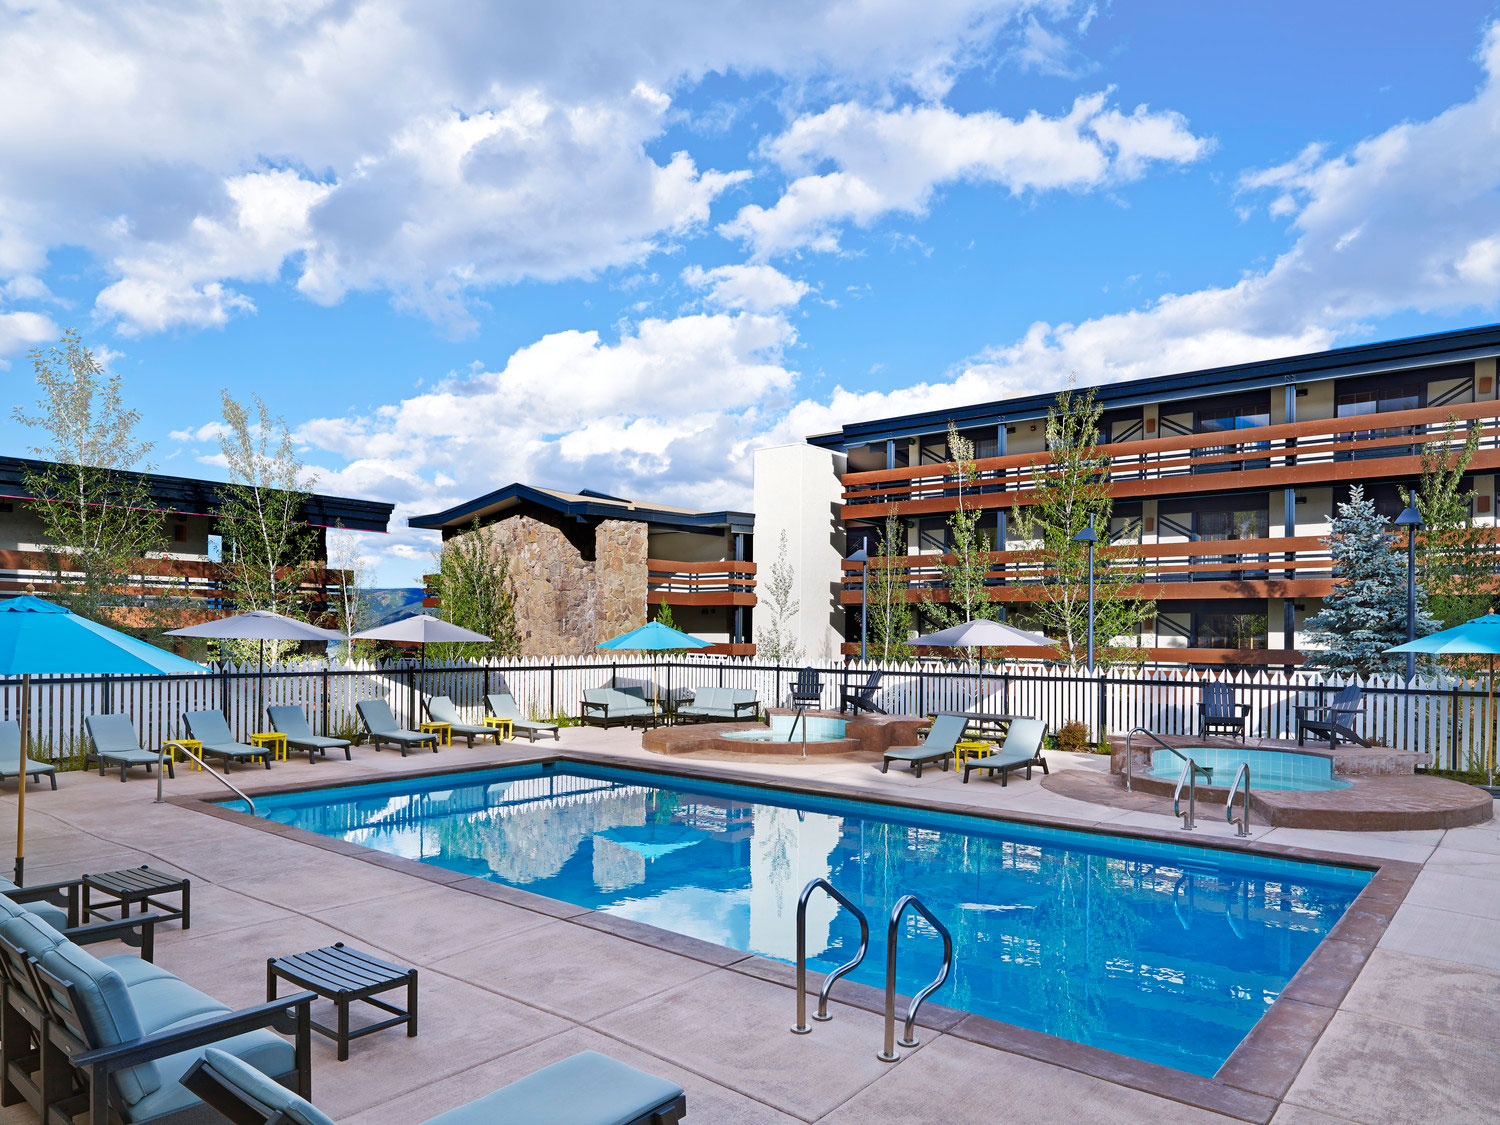 Swimming Pool & Spa at Wildwood Resort in Aspen, CO